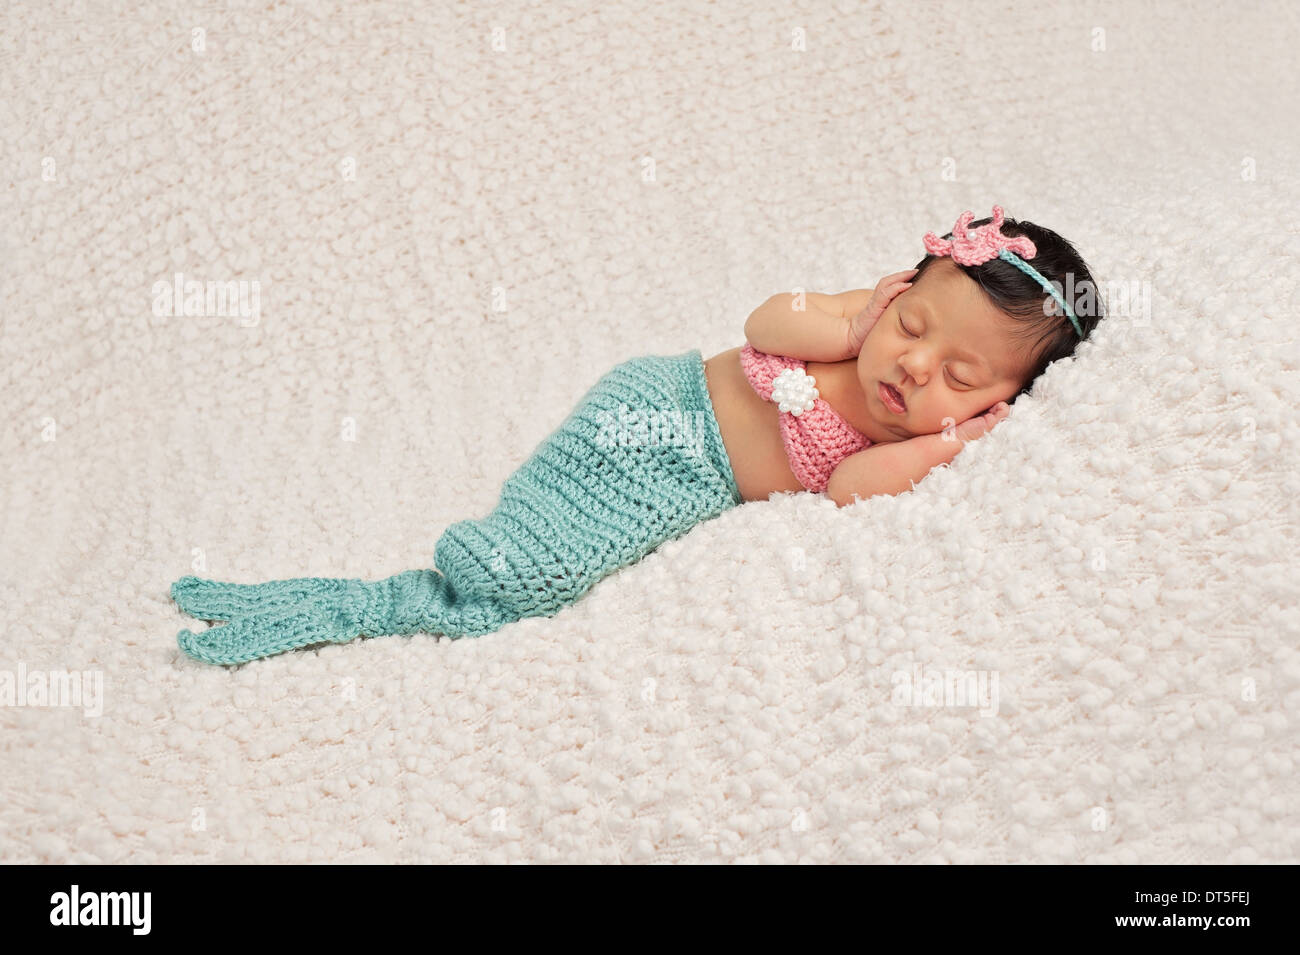 Newborn Baby Girl Wearing a Mermaid Costume Stock Photo